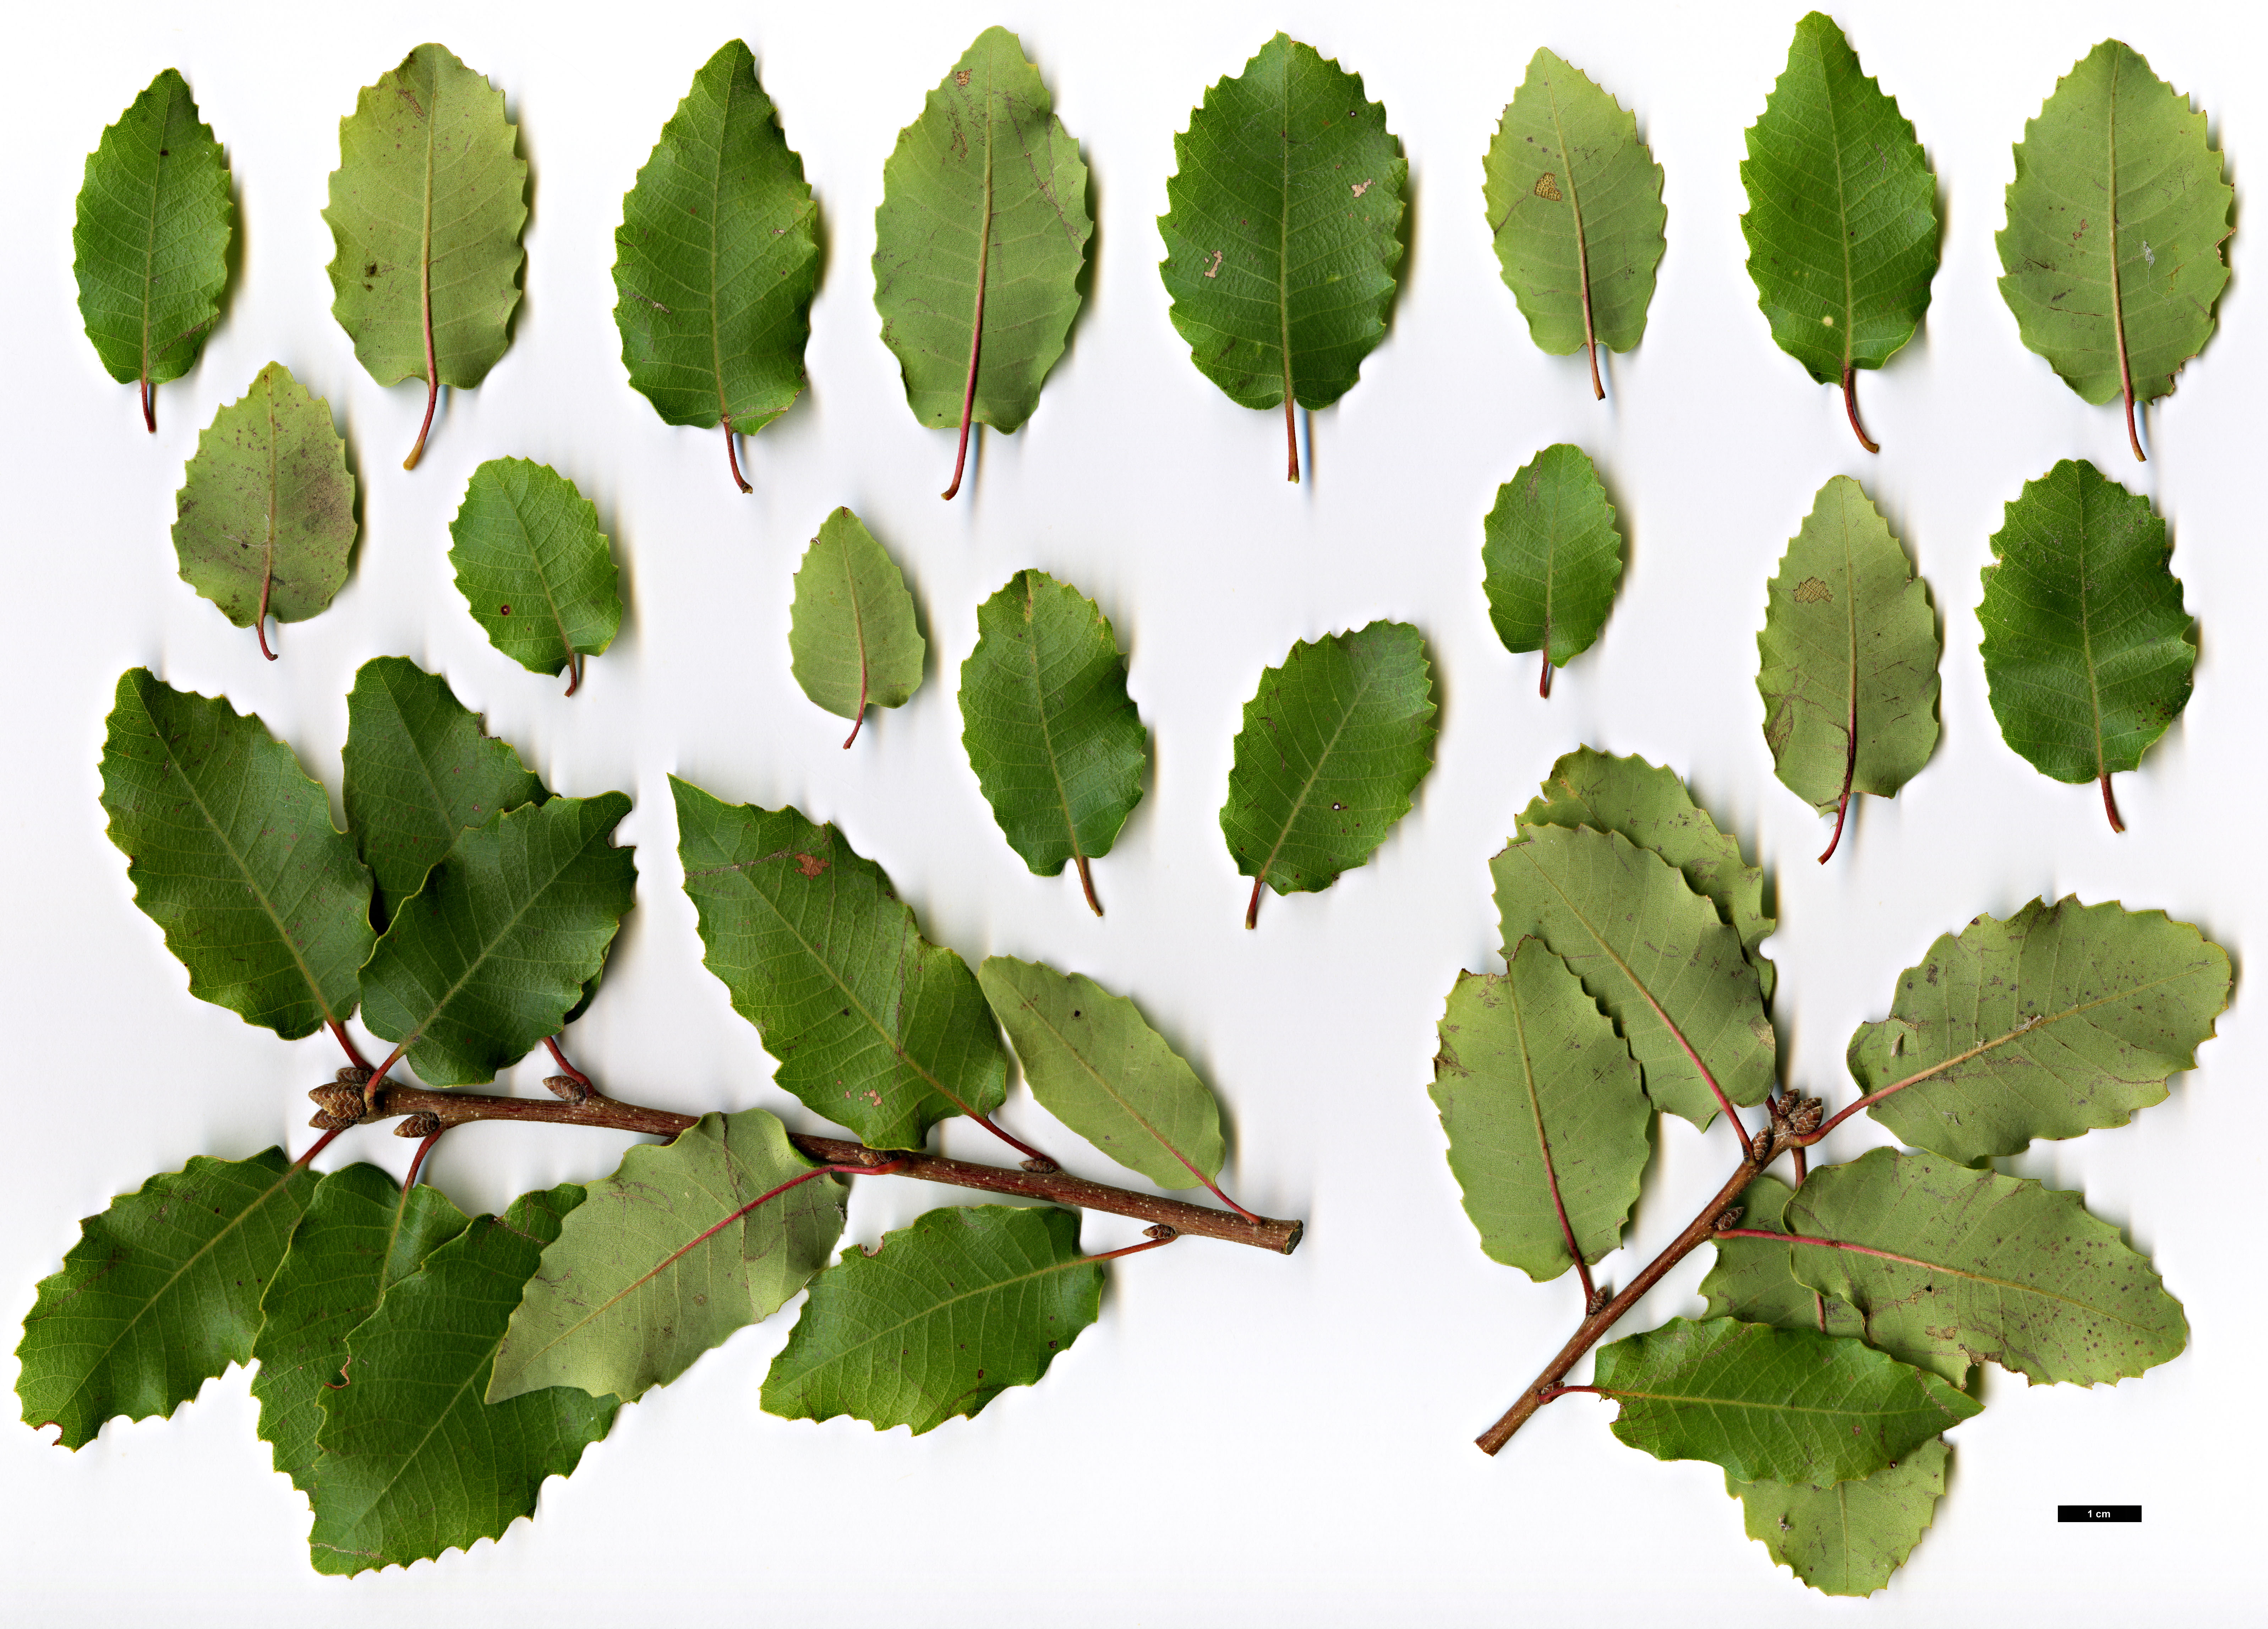 High resolution image: Family: Fagaceae - Genus: Quercus - Taxon: faginea - SpeciesSub: subsp. broteroi